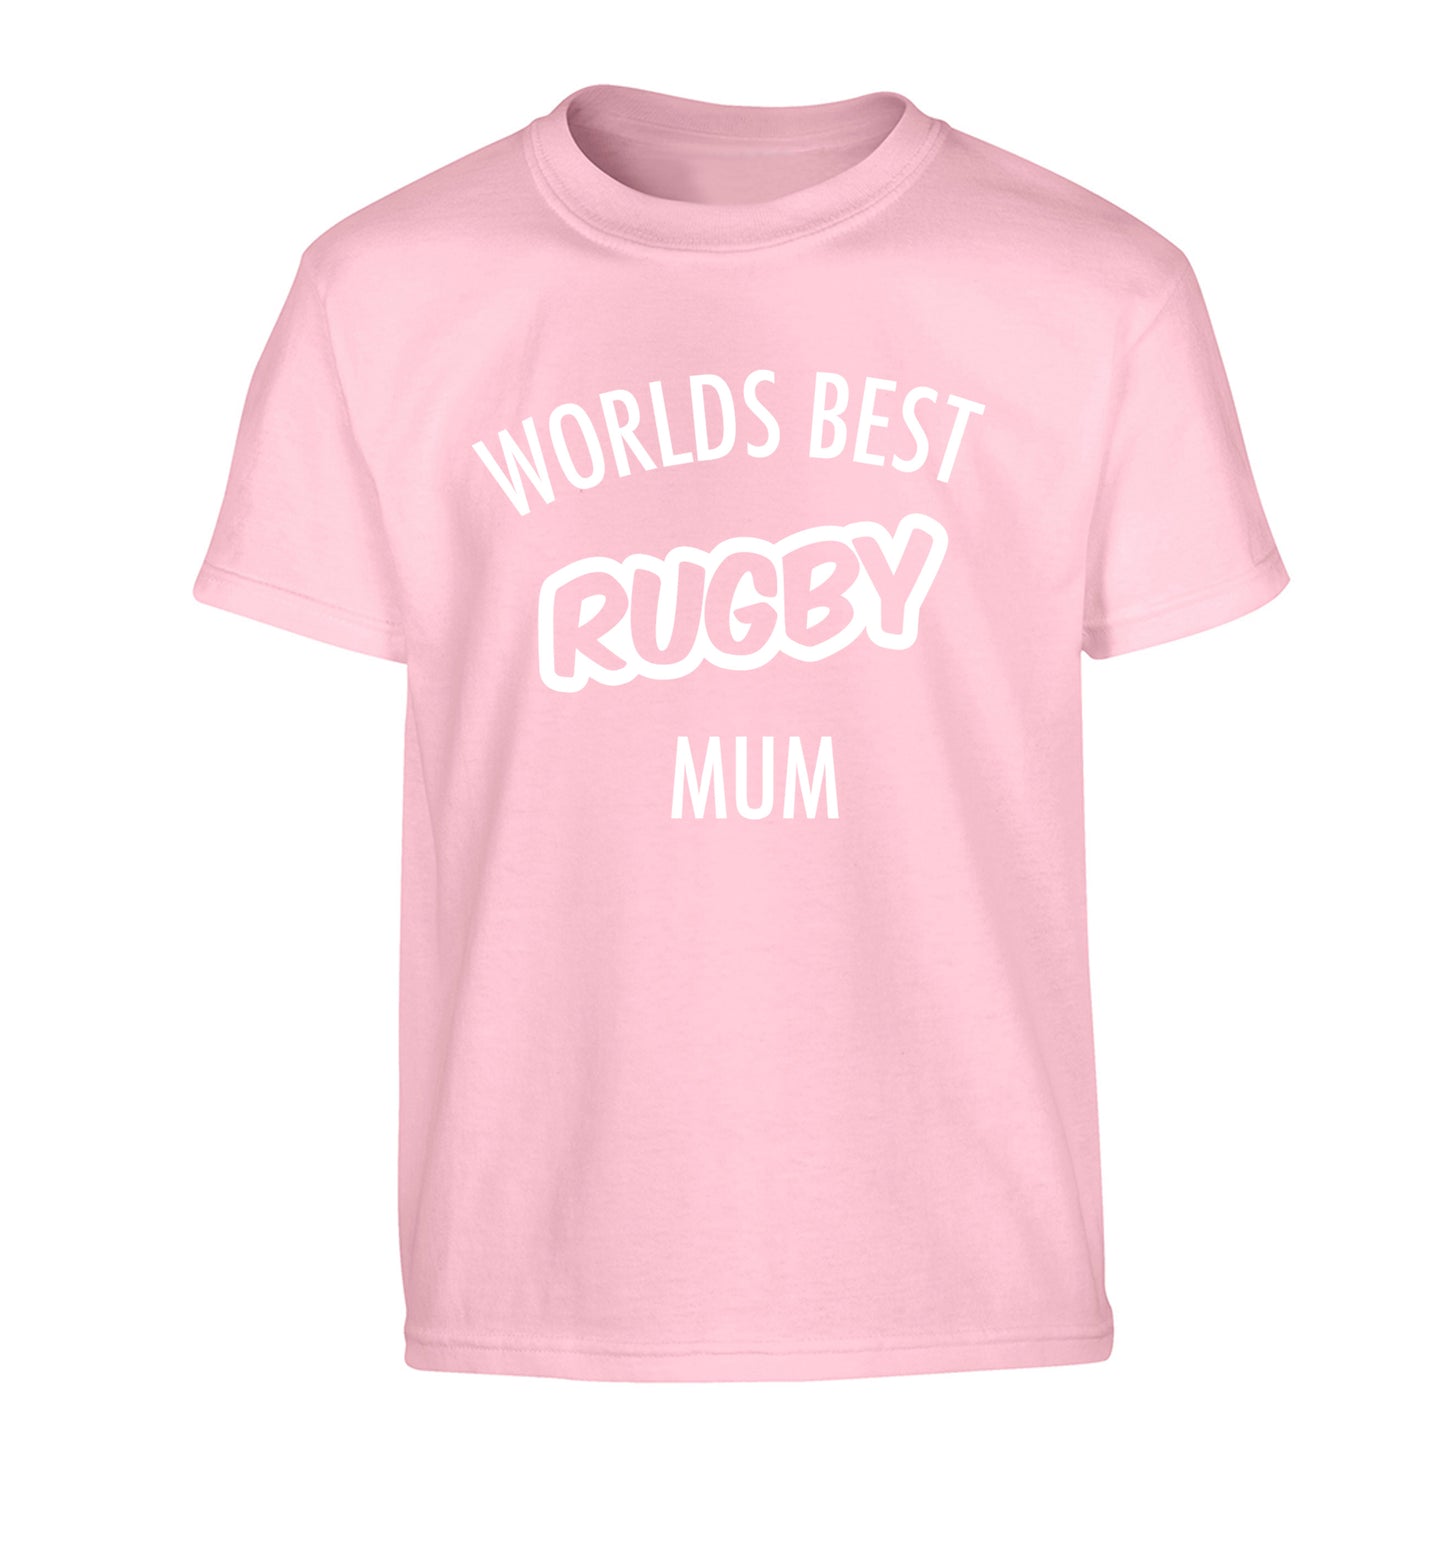 Worlds best rugby mum Children's light pink Tshirt 12-13 Years